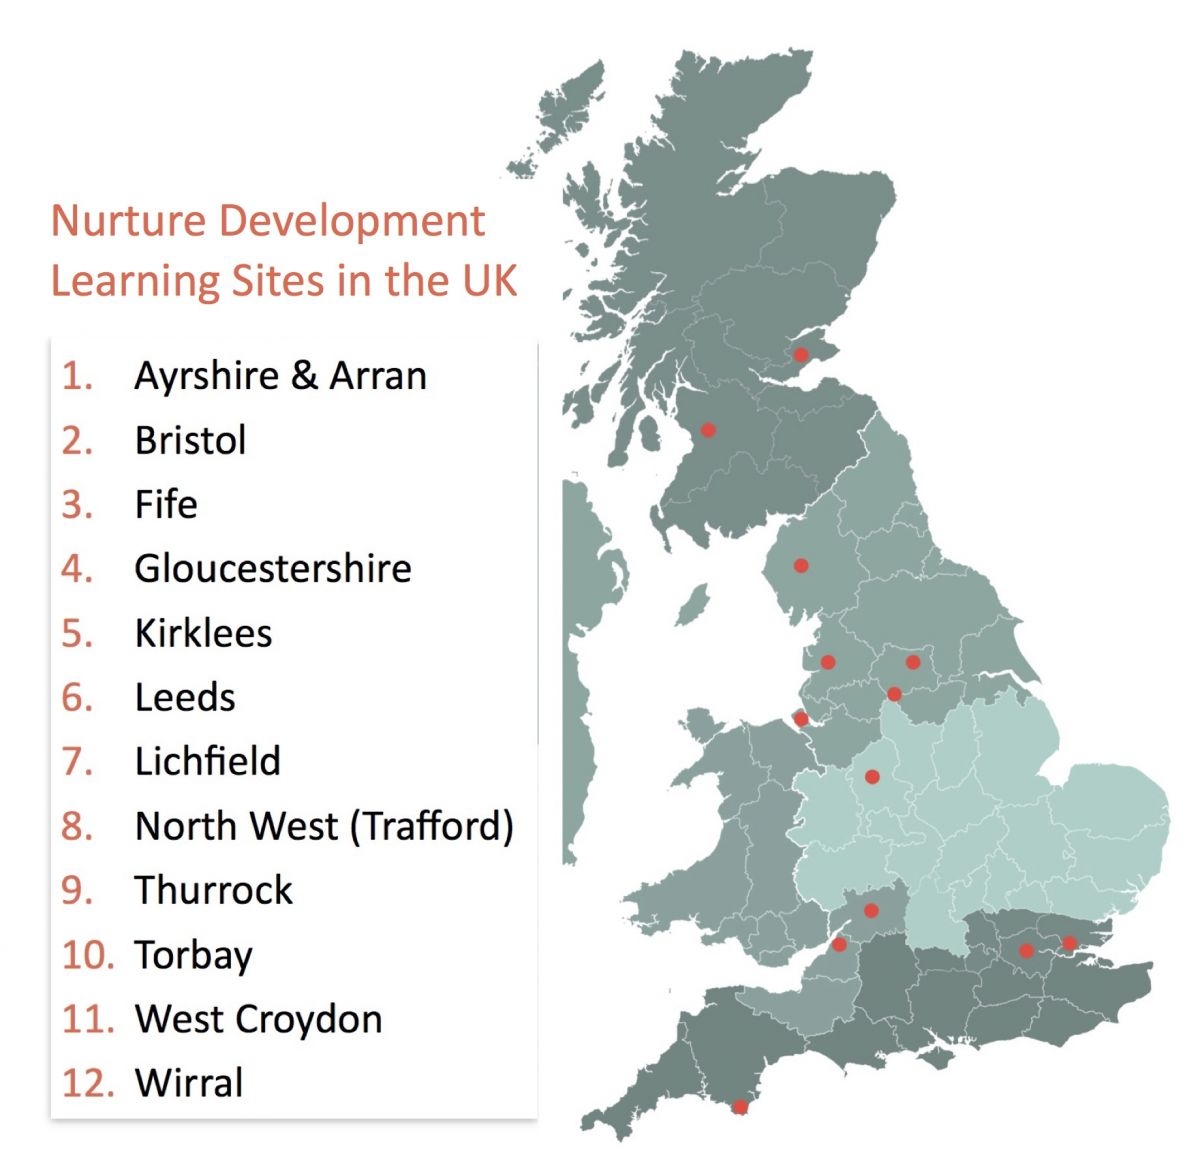 Nurture Development Learning Sites